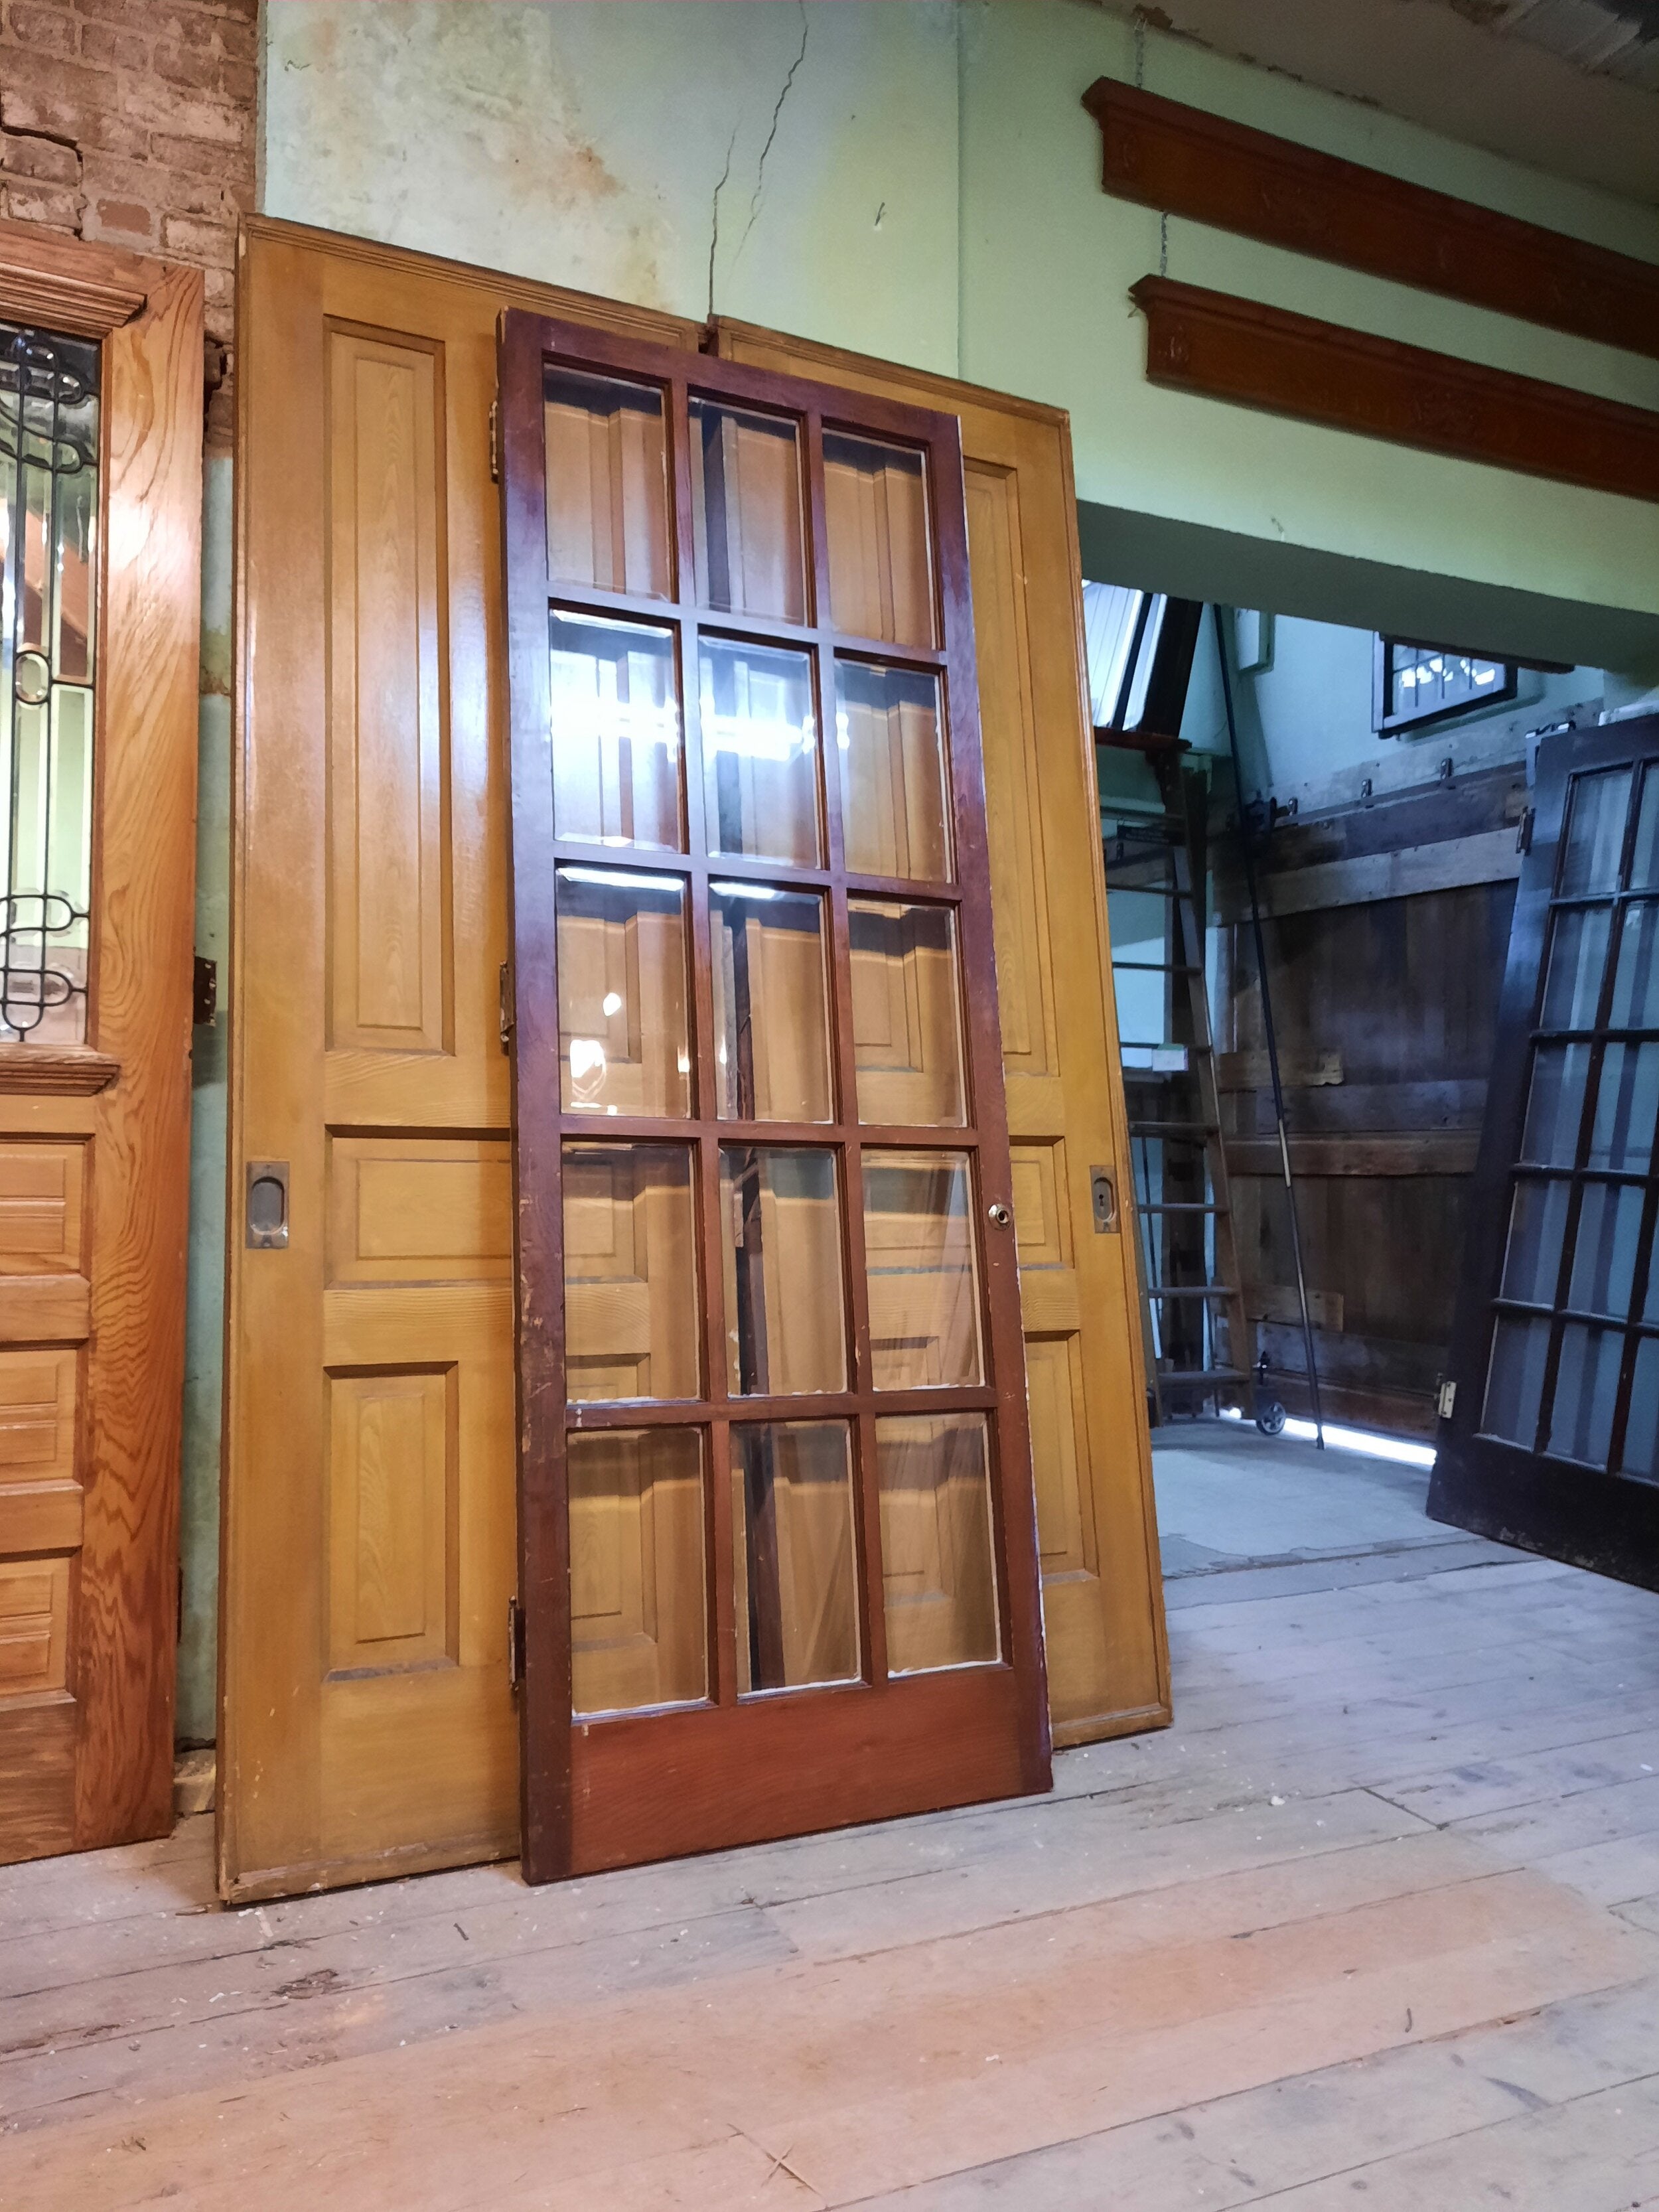 Old doors for sale craigslist